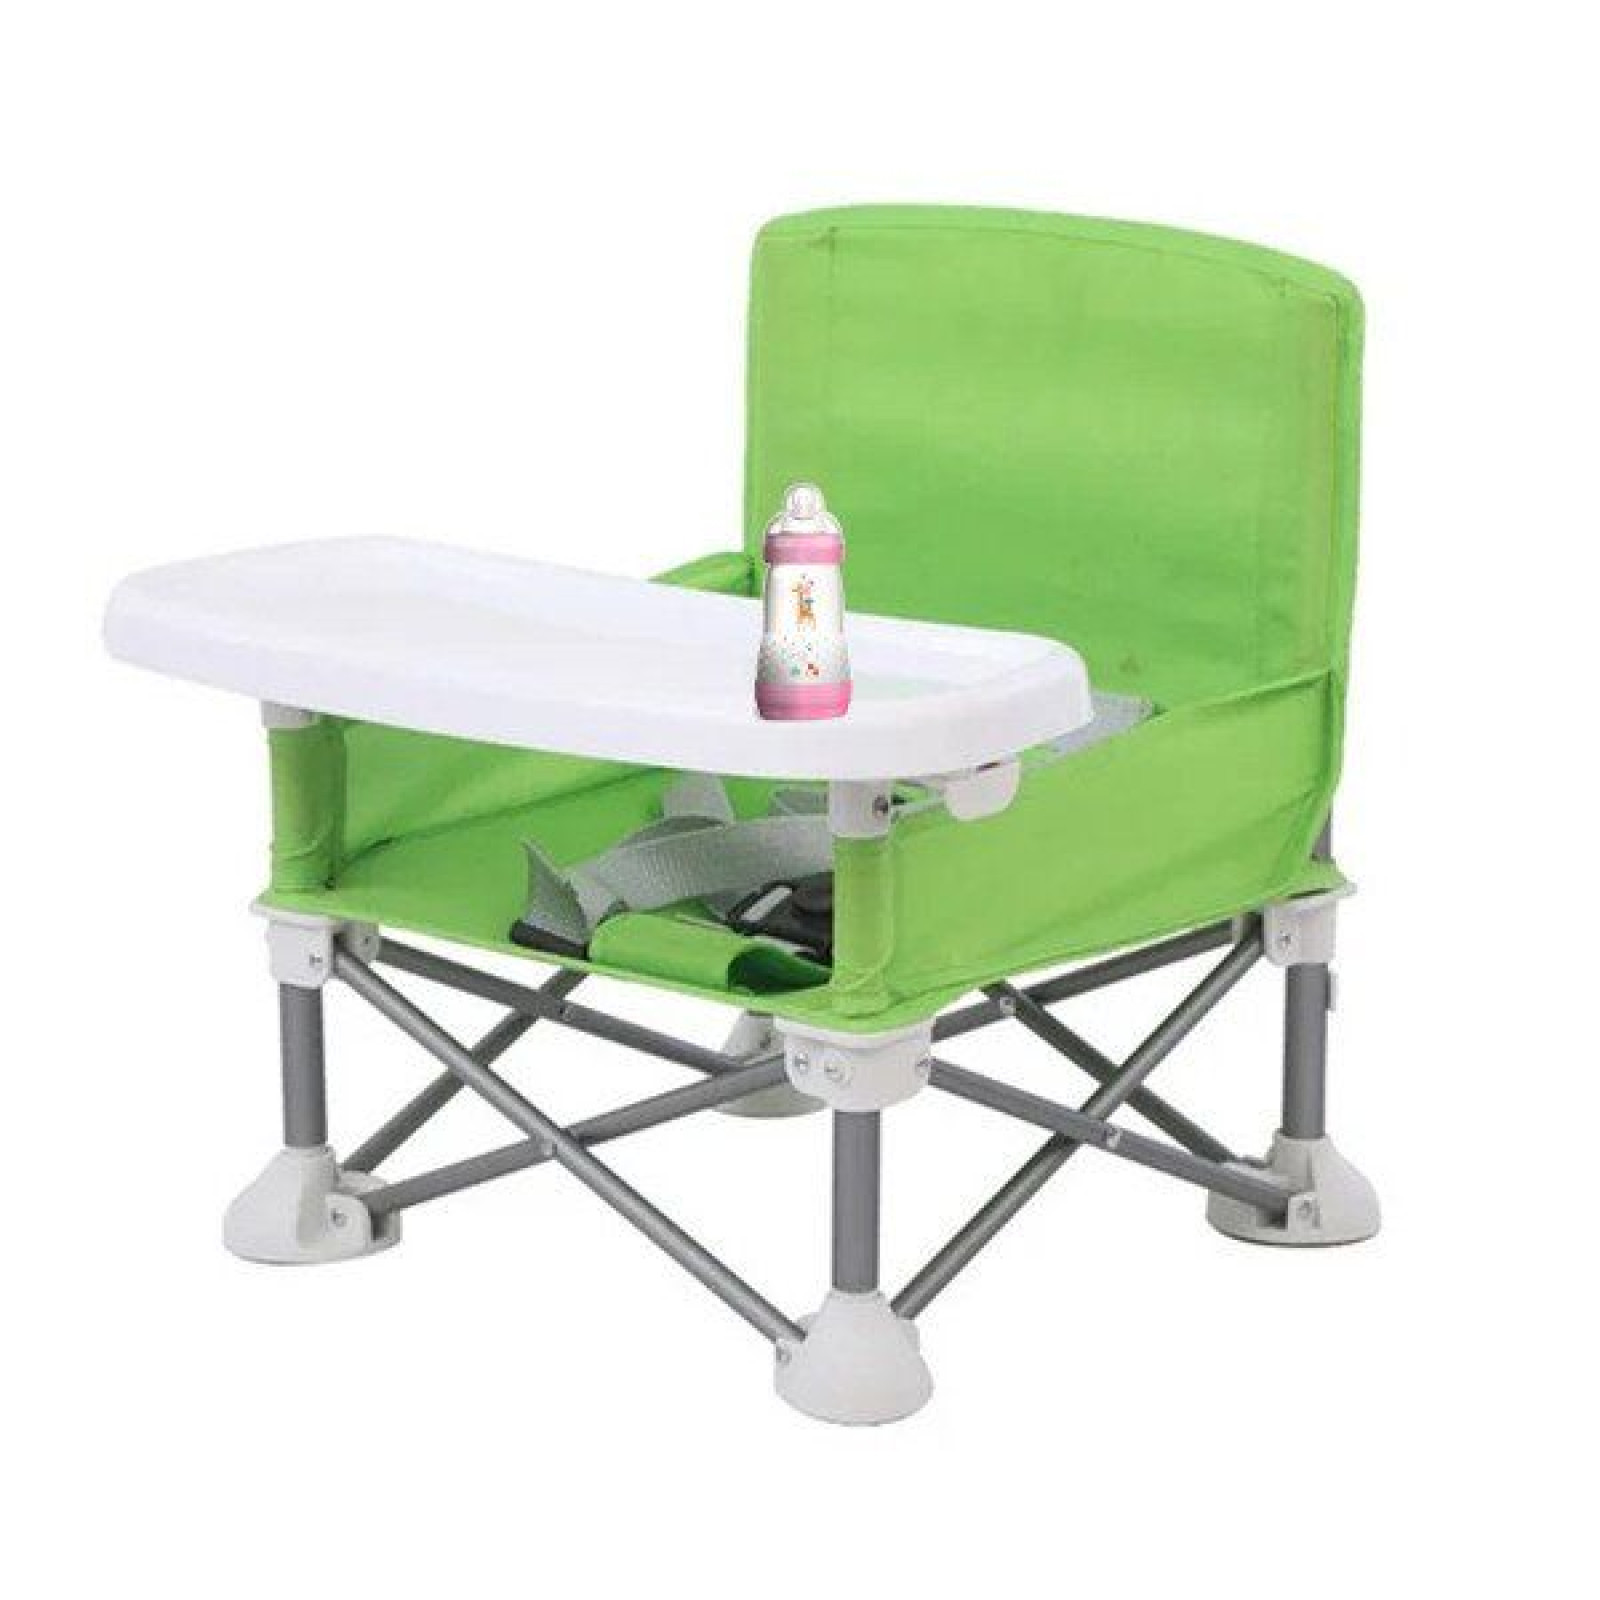 Складной детский стульчик-столик для кормления Baby seat Зеленый 184646